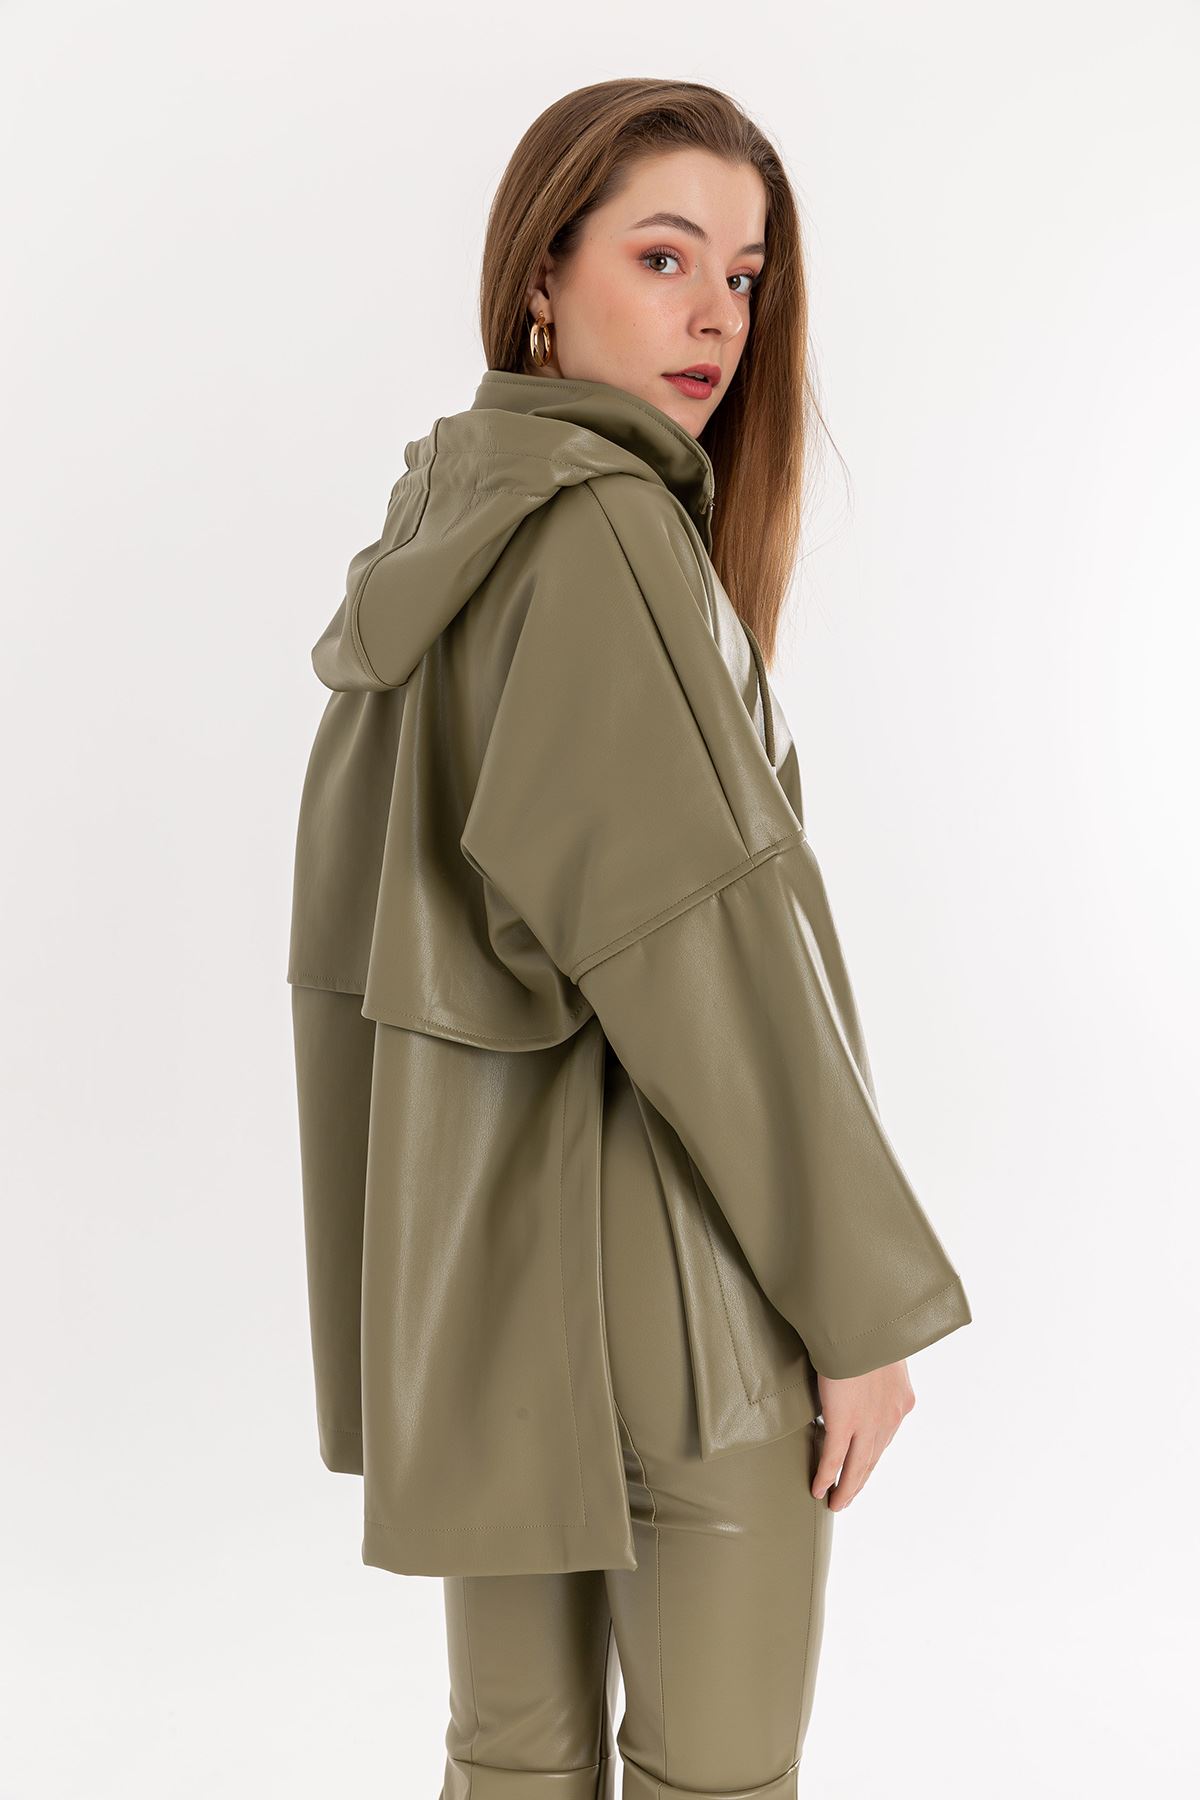 Zara Leather Fabric Long Sleeve Hooded Long Oversize Women Sweatshirt - Khaki 